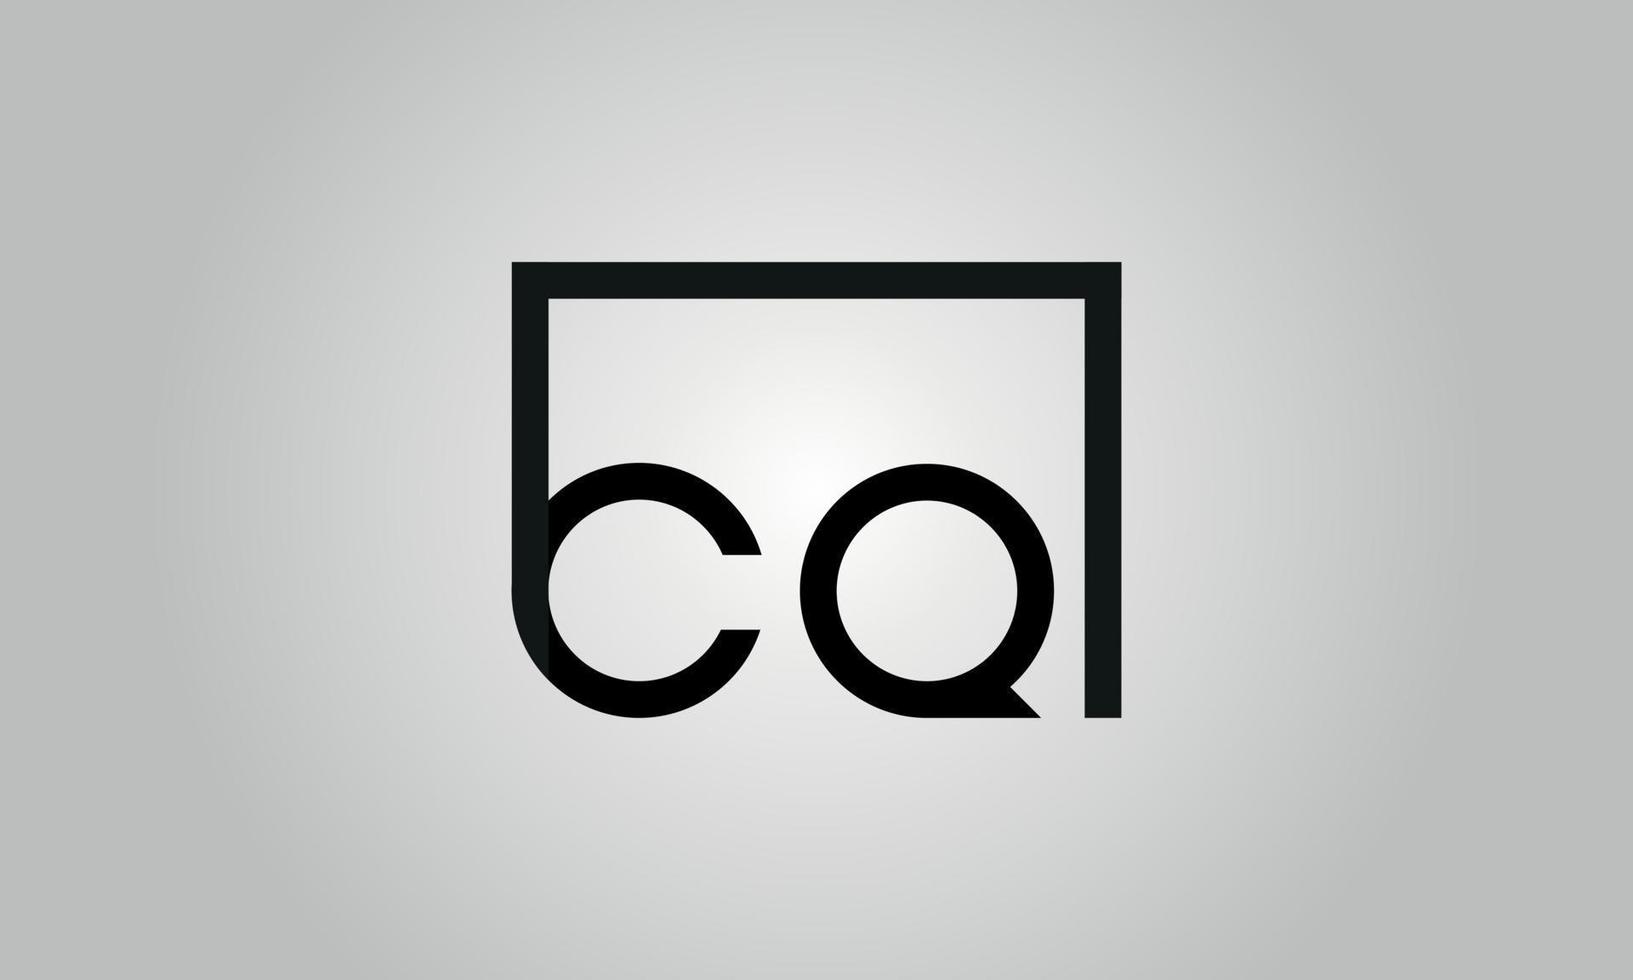 design de logotipo de letra cq. cq logotipo com forma quadrada em cores pretas modelo de vetor livre.